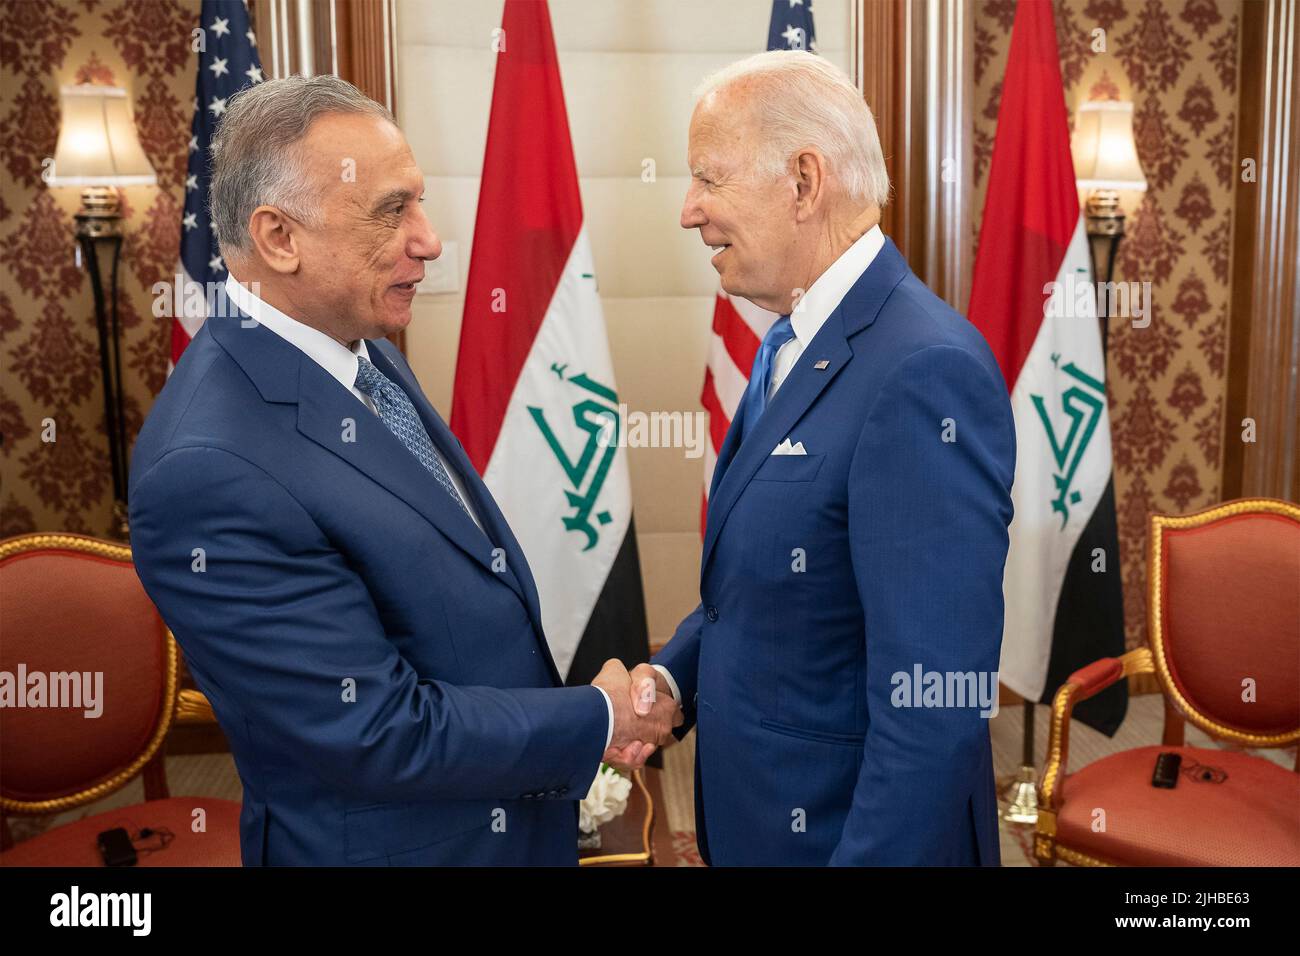 Jeddah, Arabia Saudita. 16th de julio de 2022. Joe Biden, presidente de Estados Unidos, saluda al primer ministro iraquí Mustafa Al-Kadhimi, que salió, antes del comienzo de una reunión bilateral cara a cara, al margen de la Cumbre de Seguridad y Desarrollo de Jeddah, el 16 de julio de 2022 en Jeddah, Arabia Saudita. Crédito: Adam Schultz/White House Photo/Alamy Live News Foto de stock